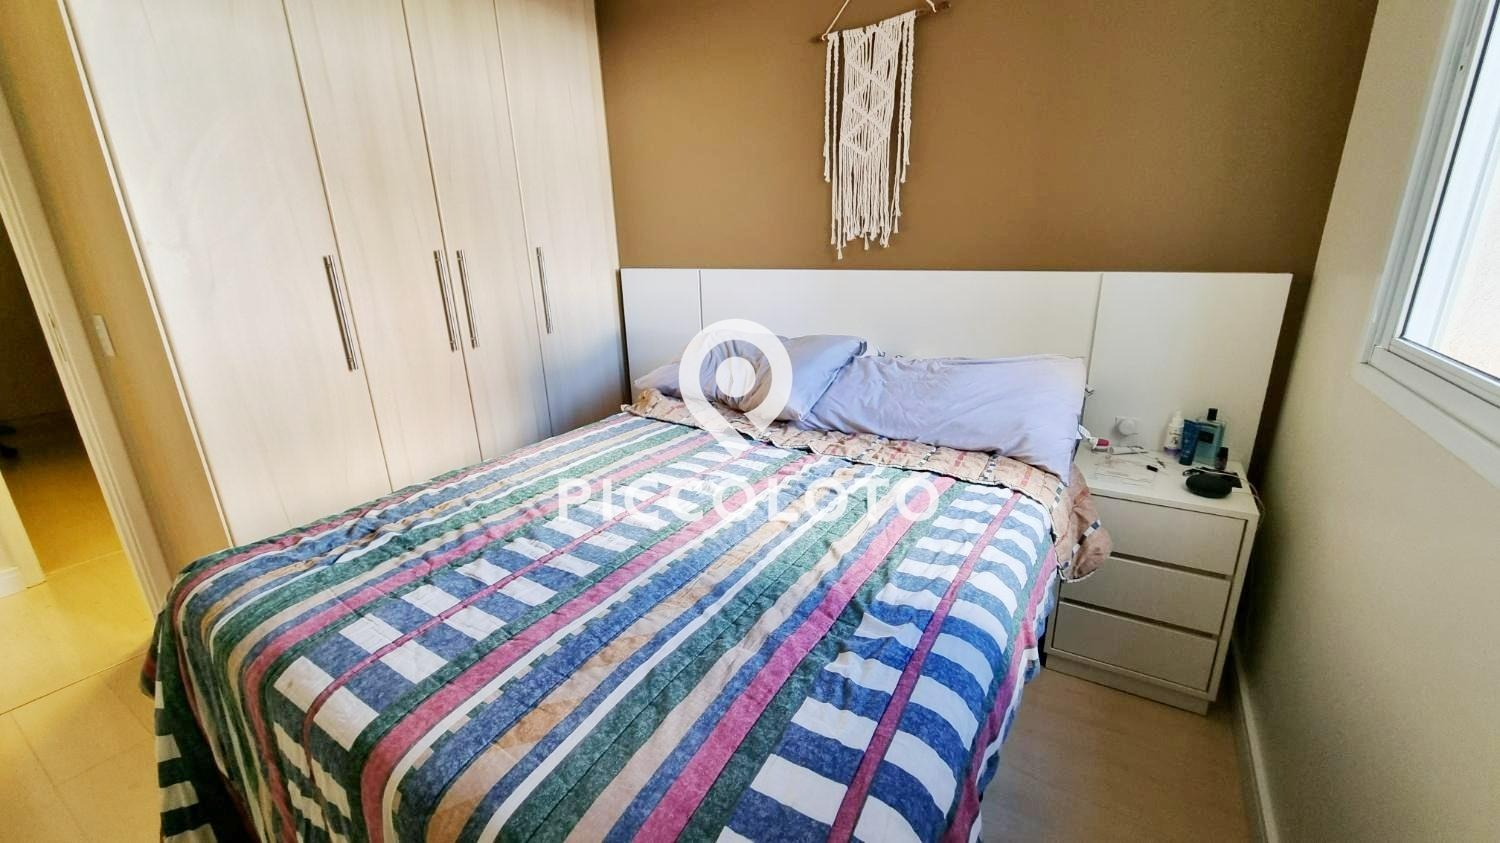 Piccoloto -Apartamento à venda no Loteamento Residencial Vila Bella em Campinas